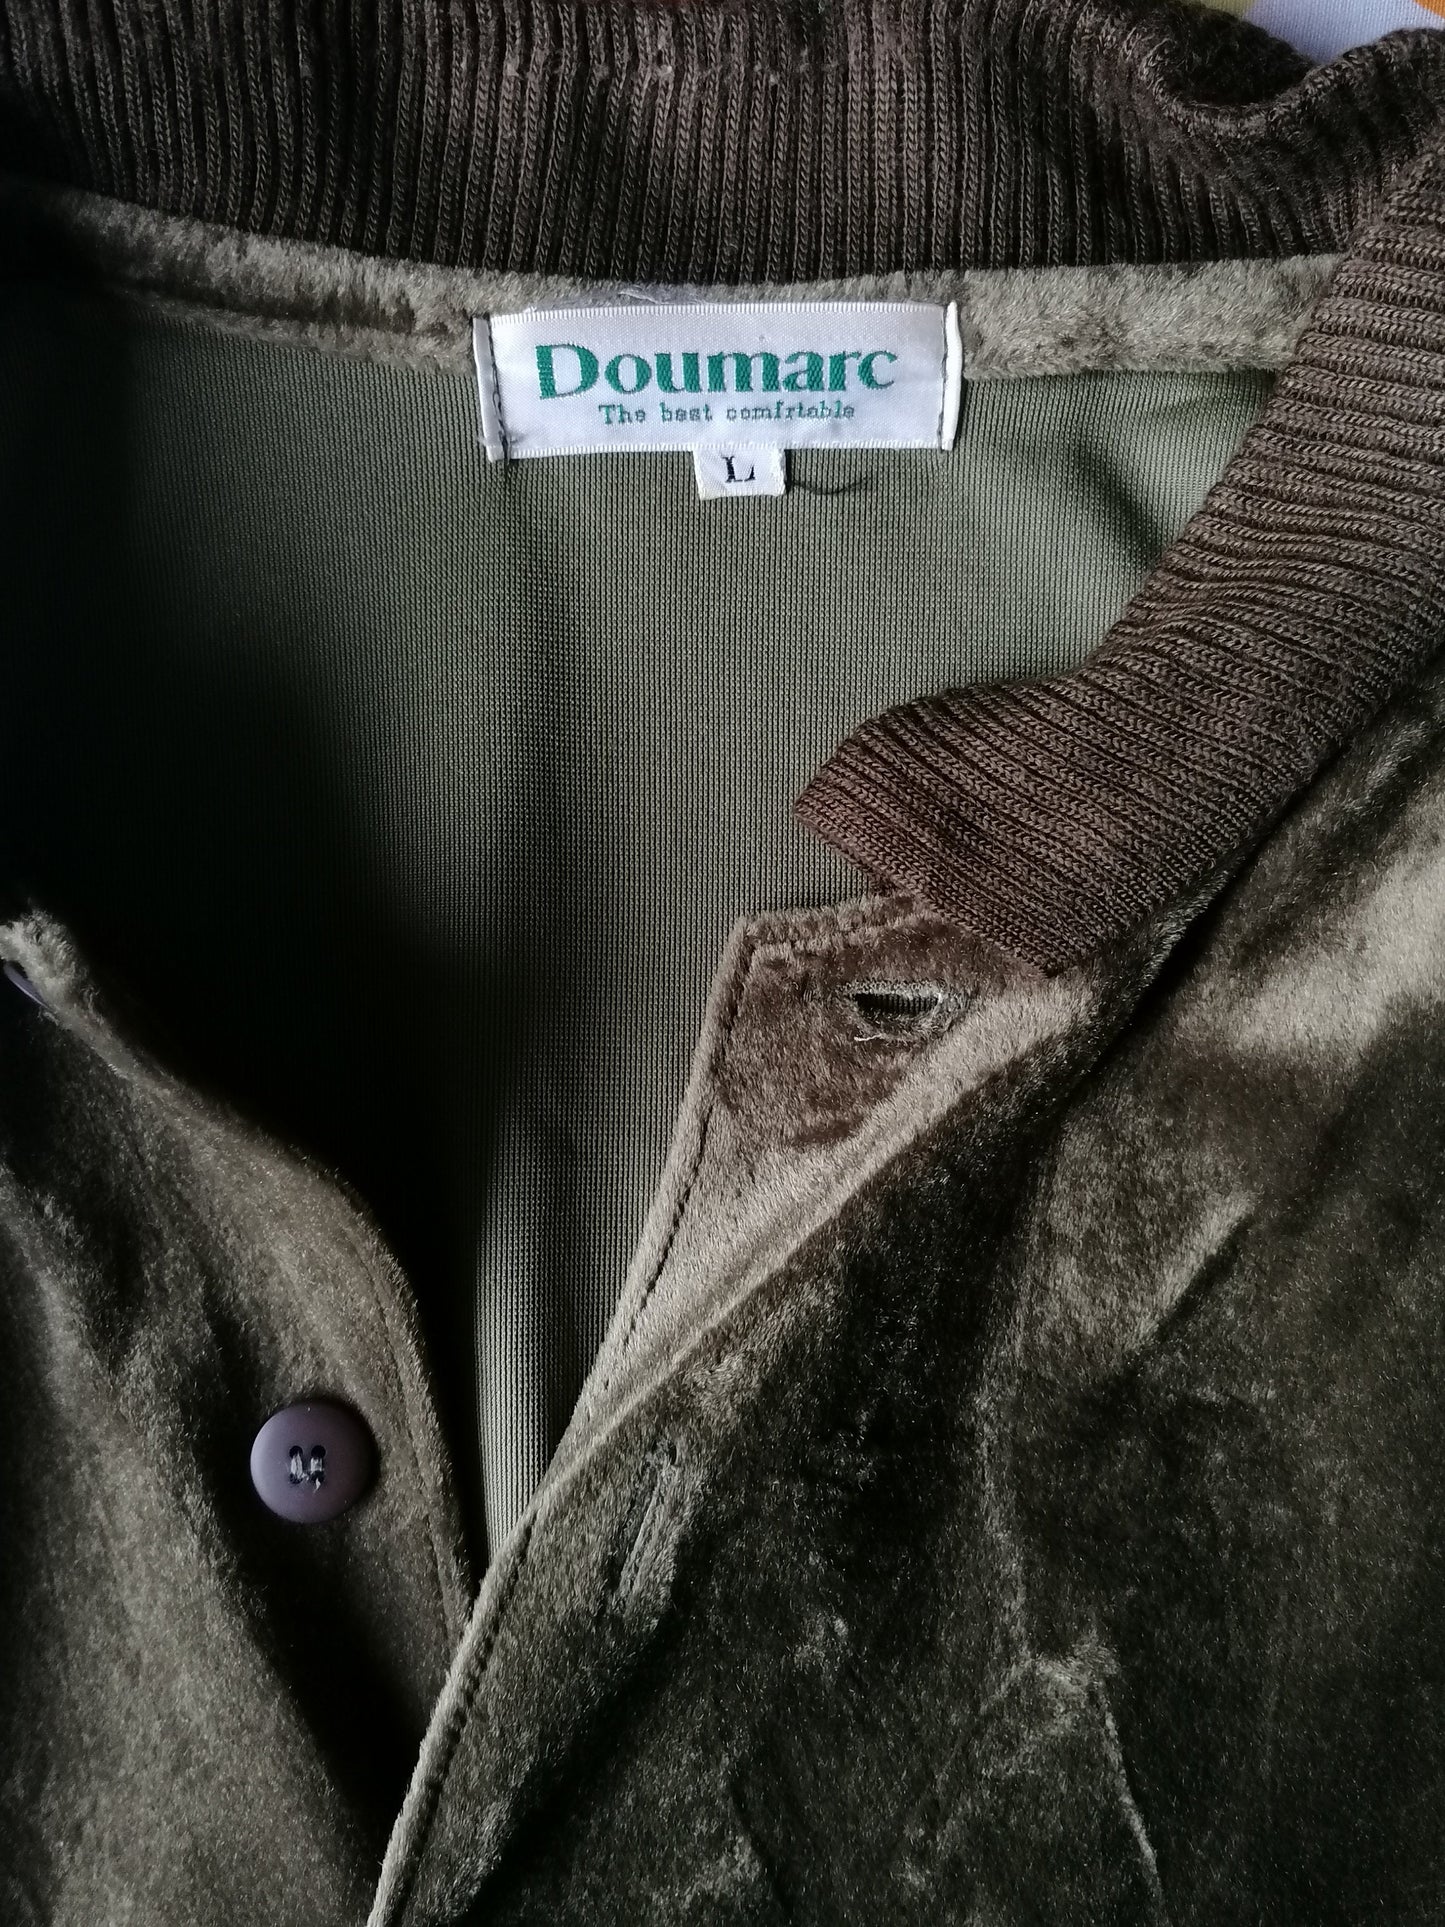 Vintage Doumar Velvet velor polo sweater. Green colored. Size L.